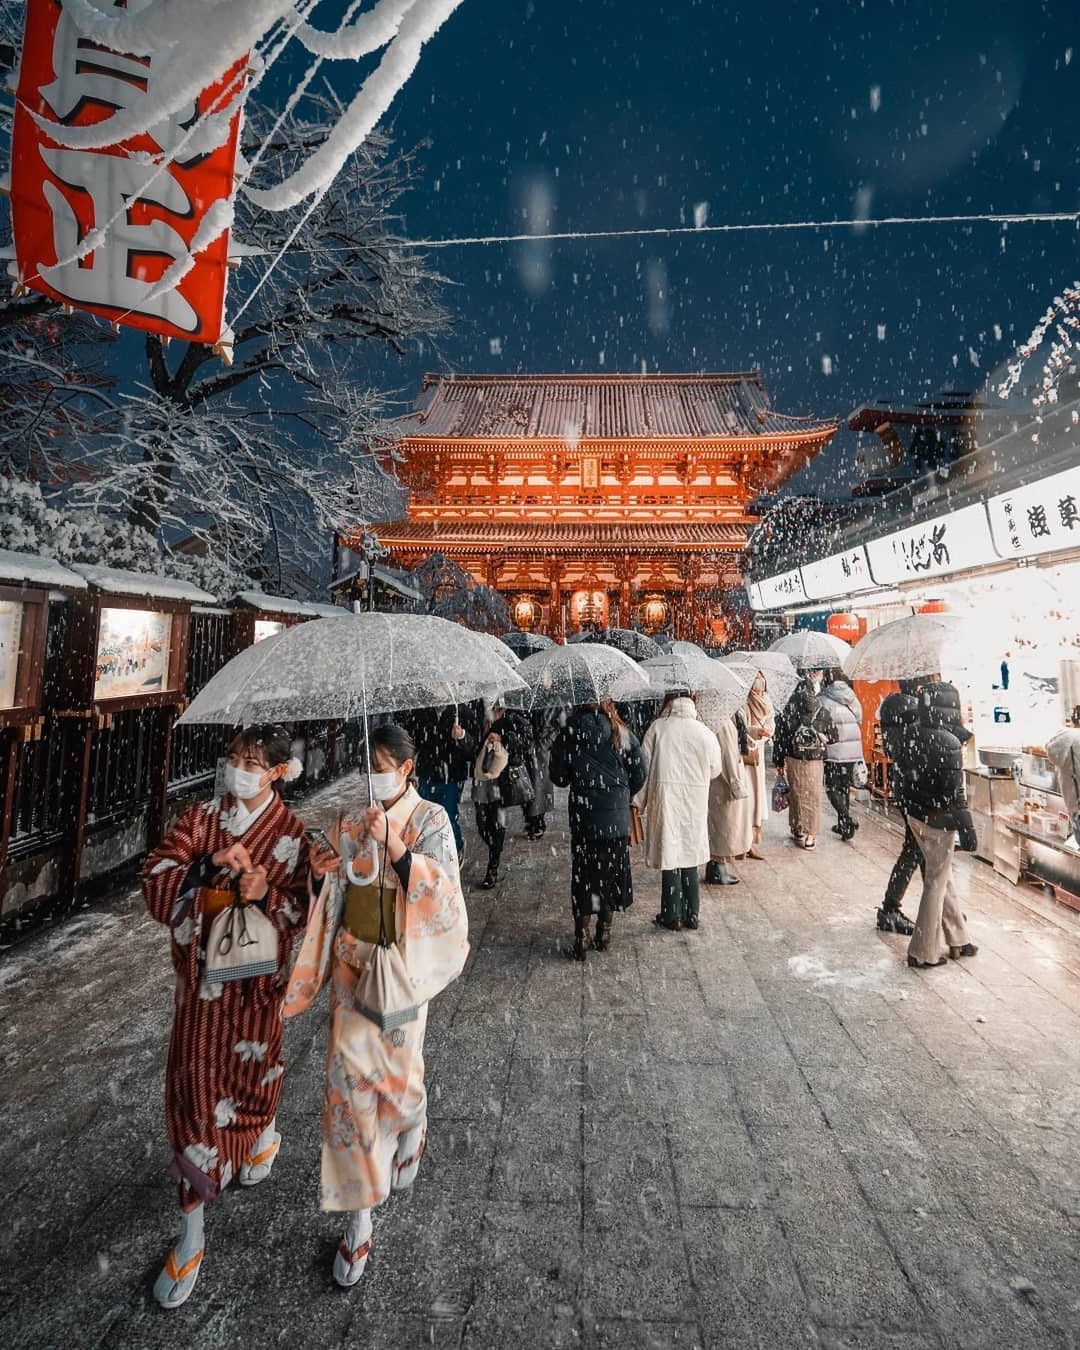 Tokyo, Tuyết Trắng, Khung Cảnh: Cùng đi du lịch Tokyo vào mùa đông để trải nghiệm những khoảnh khắc tuyệt vời với tuyết trắng và khung cảnh đẹp nhất. Hãy bước vào những con đường nhỏ đầy không khí nhẹ nhàng, hãy thưởng thức món ăn nóng hổi và cùng đón mùa đông trên đất Nhật.